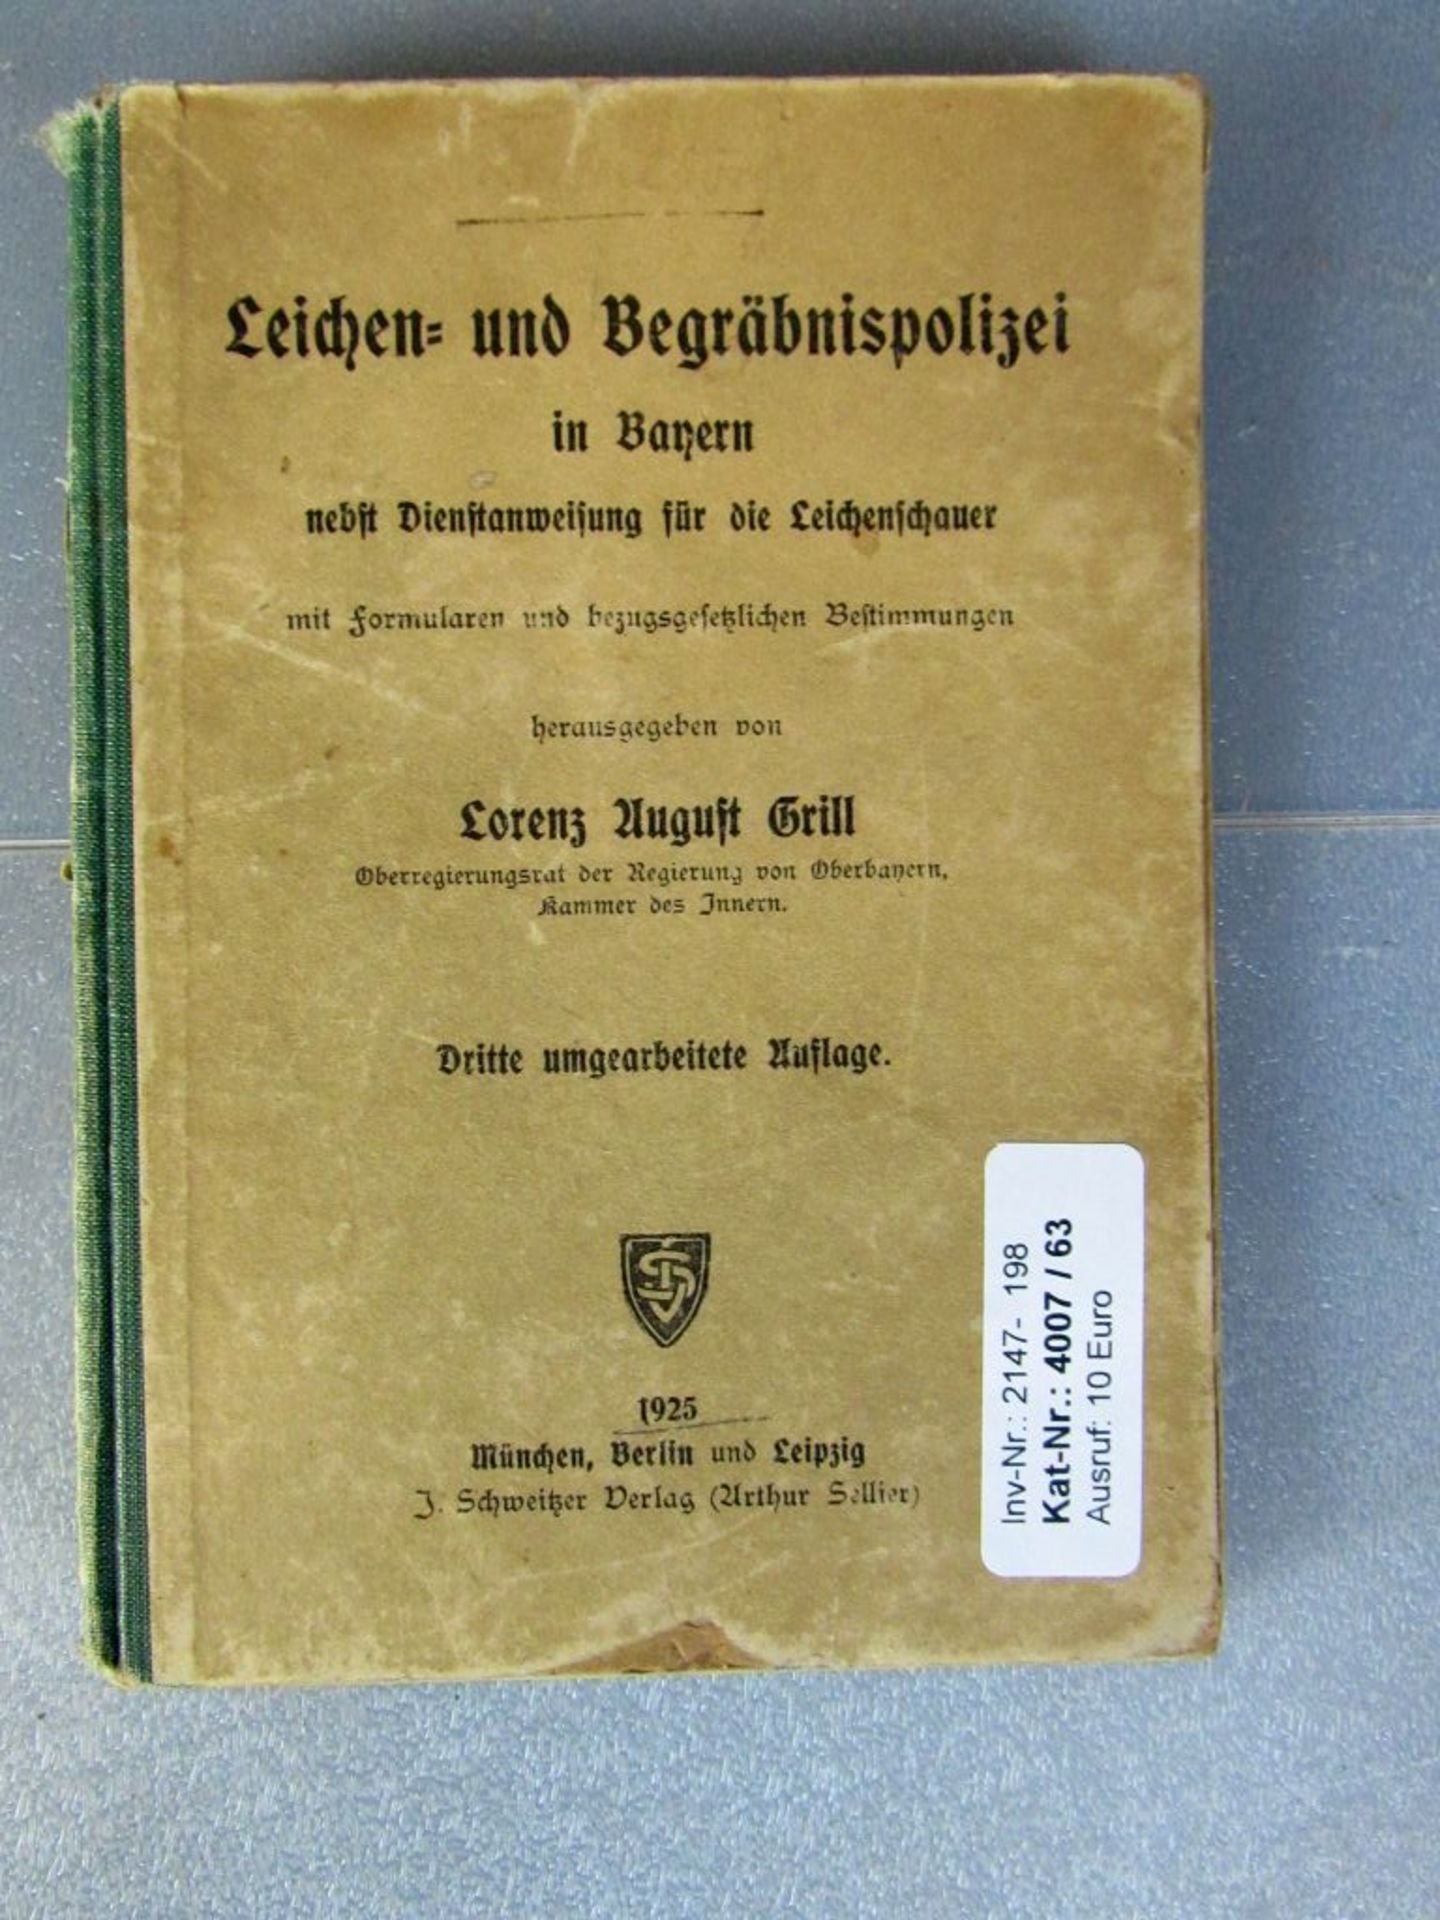 Seltenes Buch Leichen und - Image 2 of 21